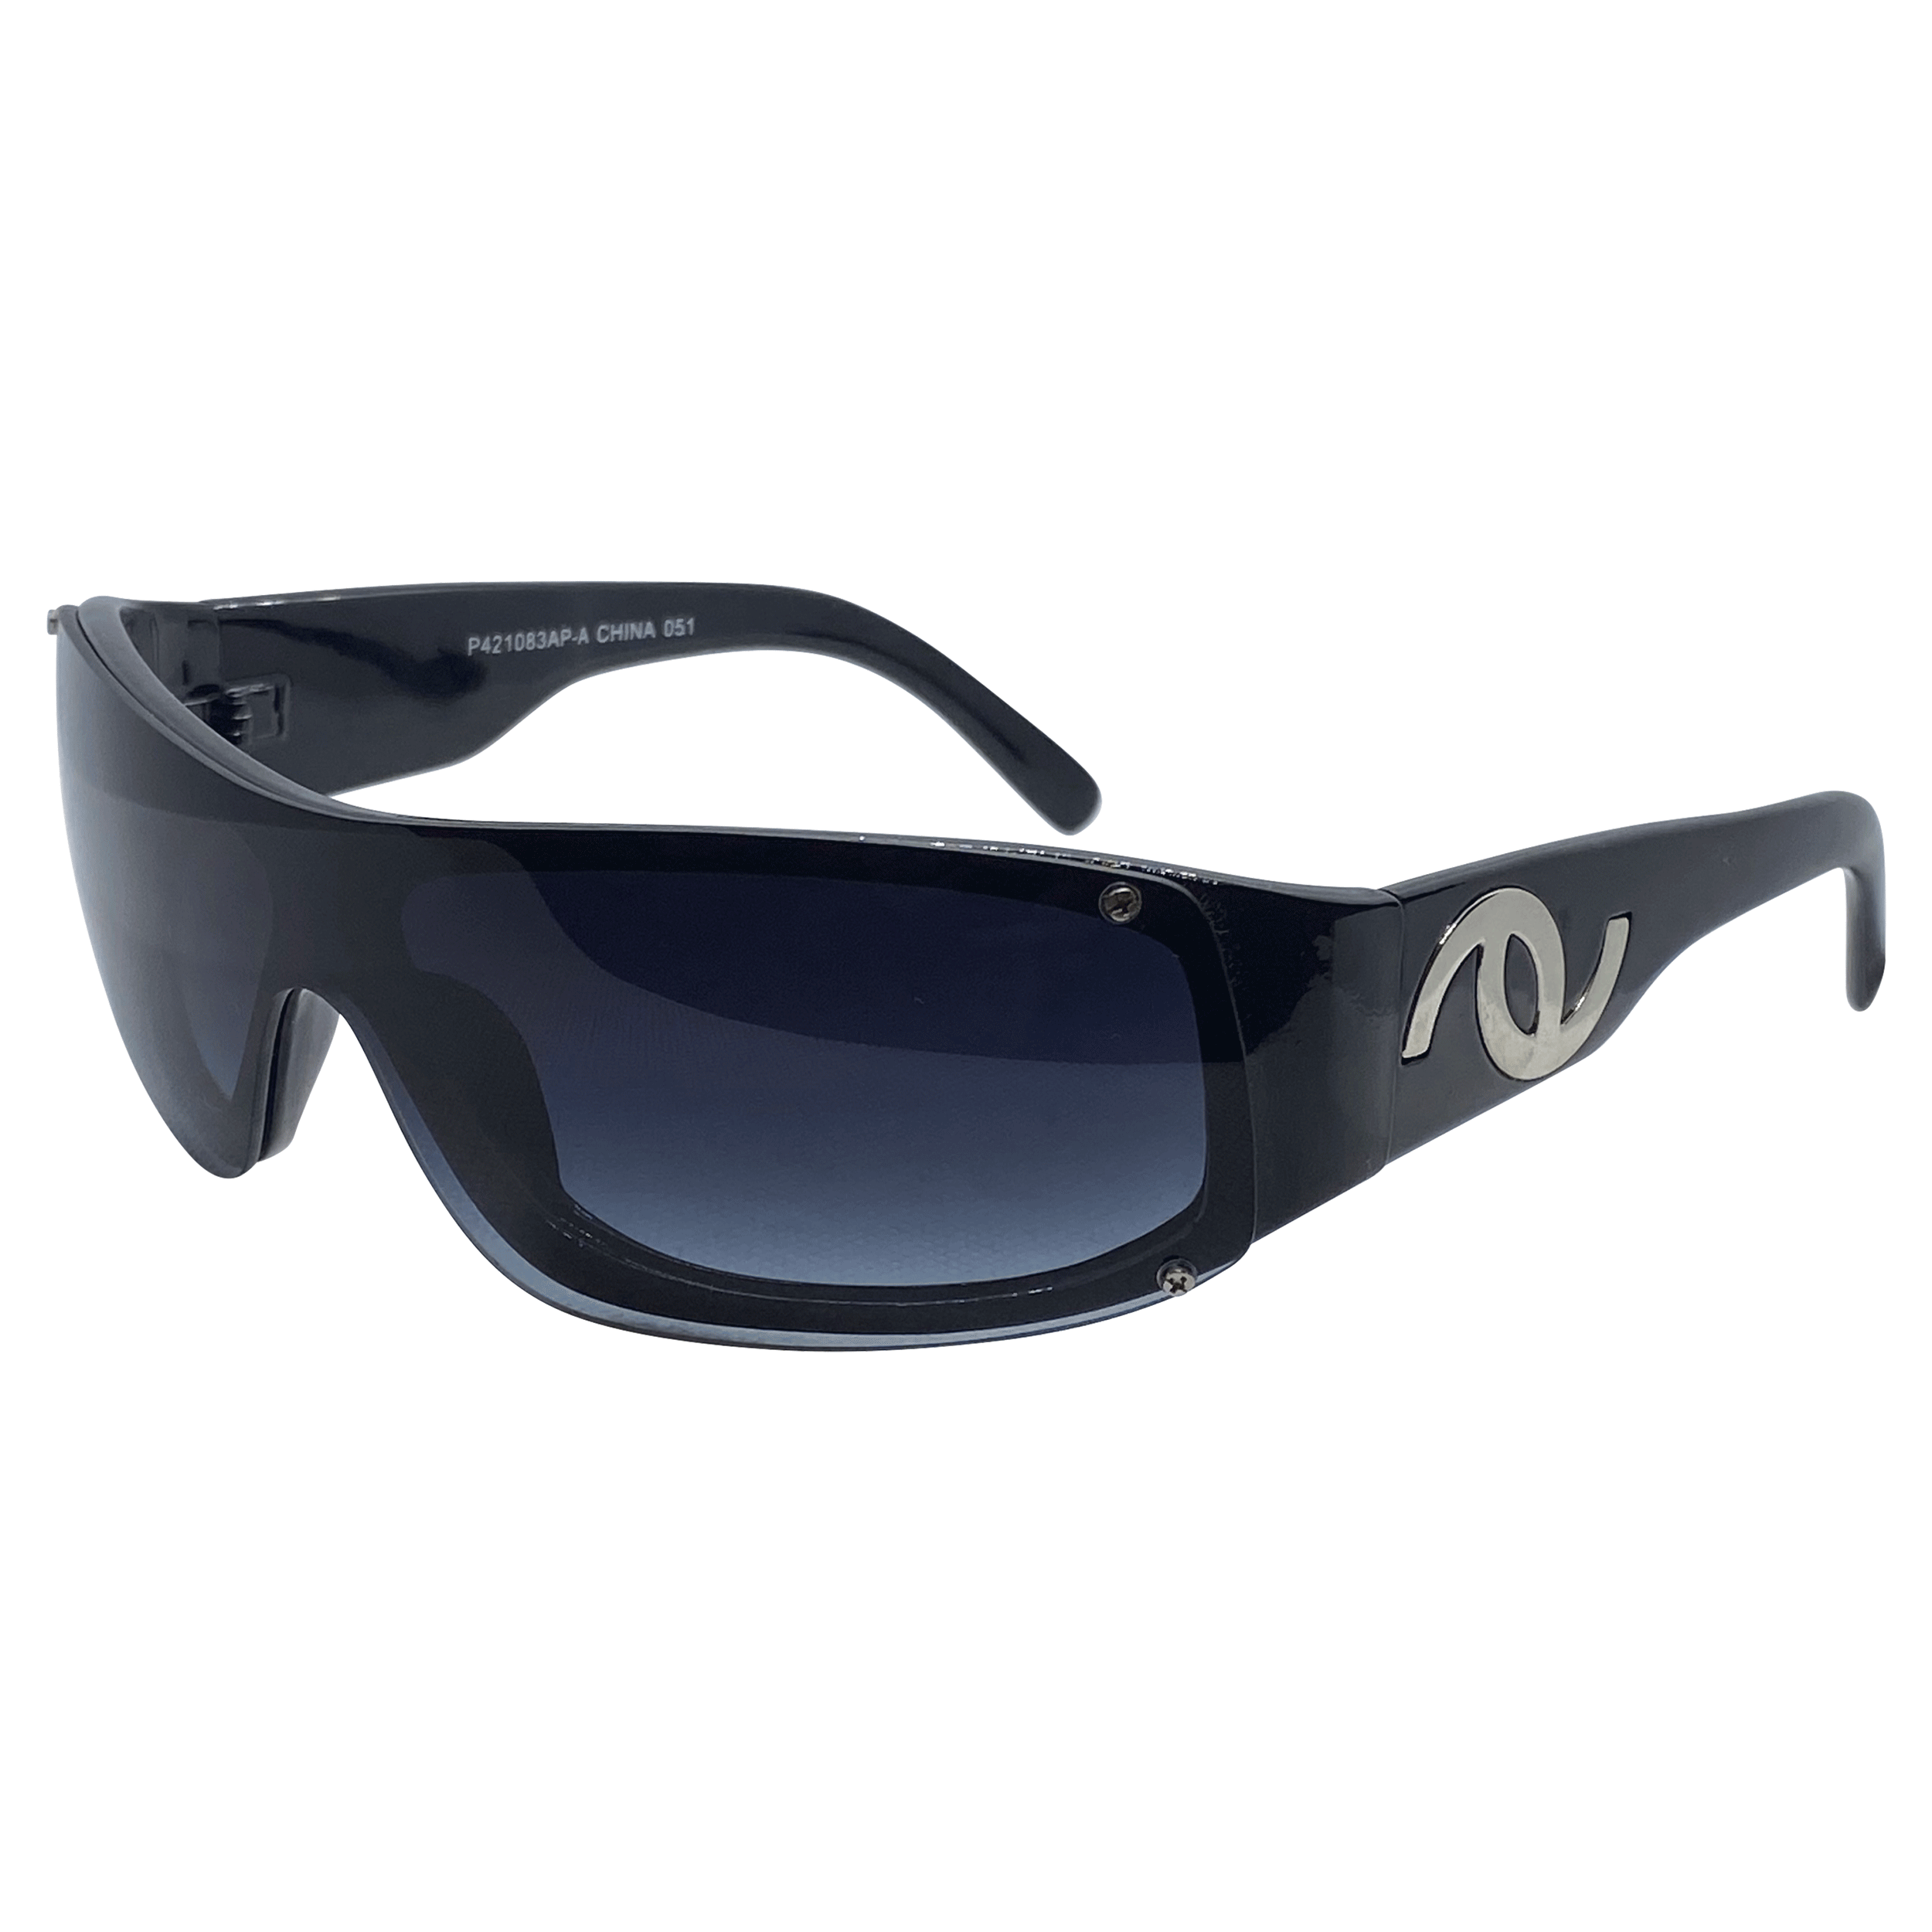 GONZALEZ Smoke Sports Sunglasses